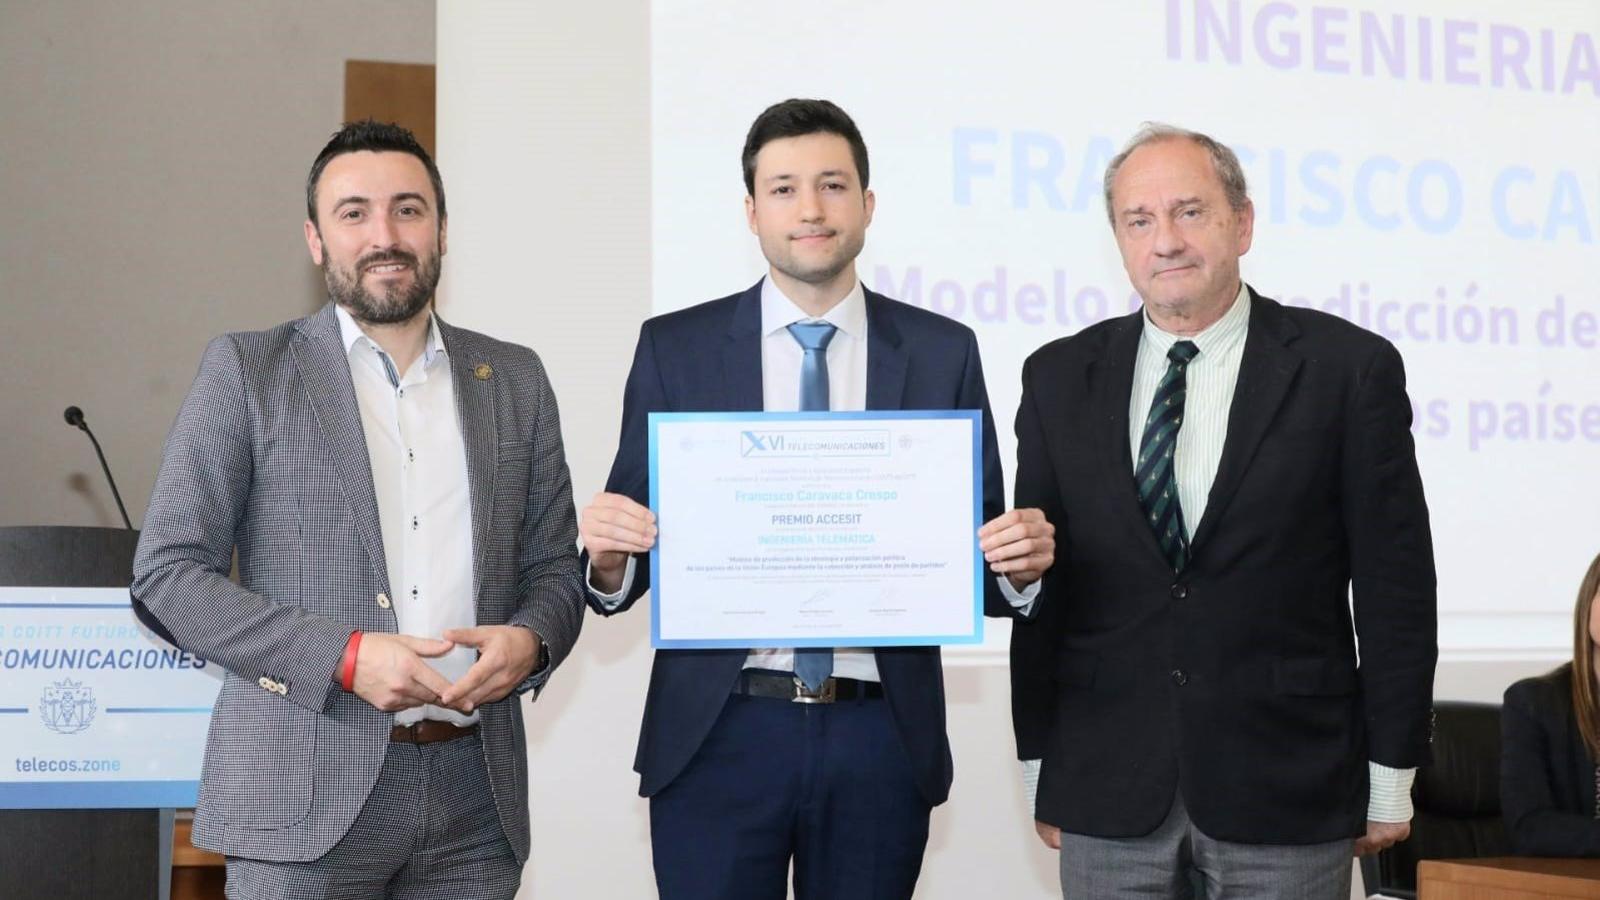 Un estudiante de la Universidad Carlos III de Madrid ha sido premiado con un accésit en los Premios COITT Futuro de las Telecomunicaciones